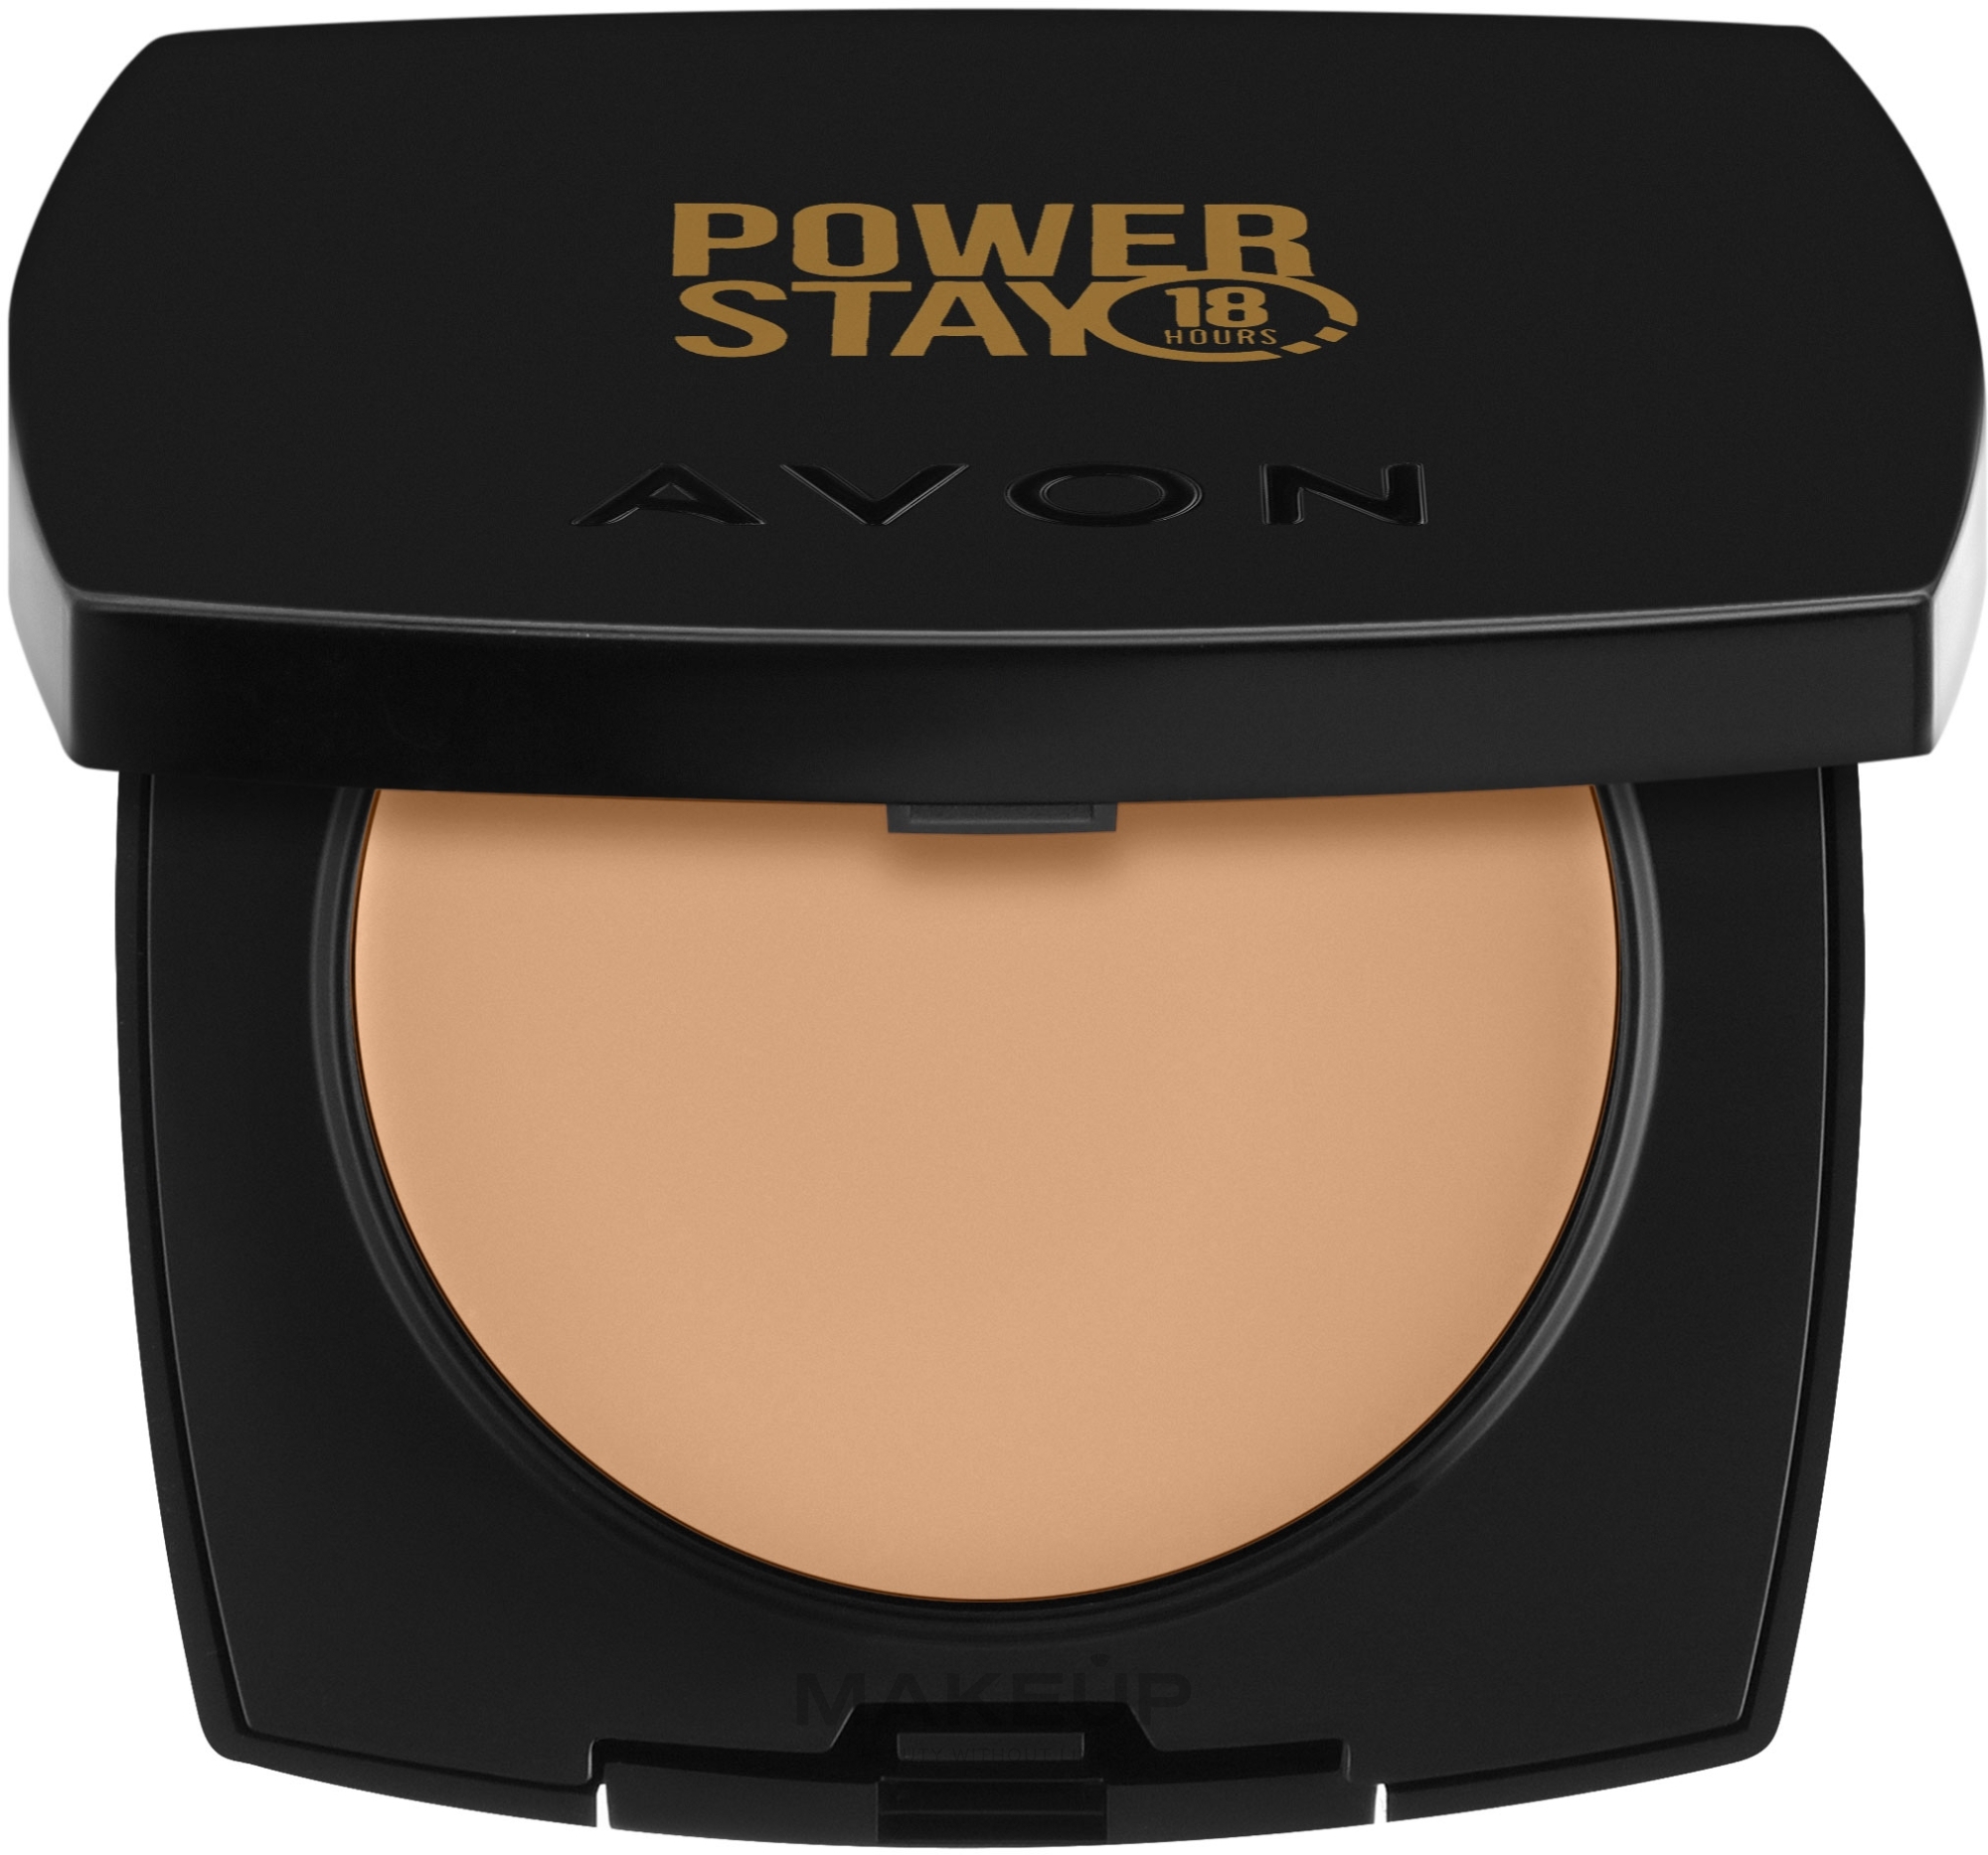 Kompaktowy kremowy puder do twarzy - Avon Power Stay 18 Hours Cream-To-Powder Foundation — Zdjęcie 220G - Light Nuge